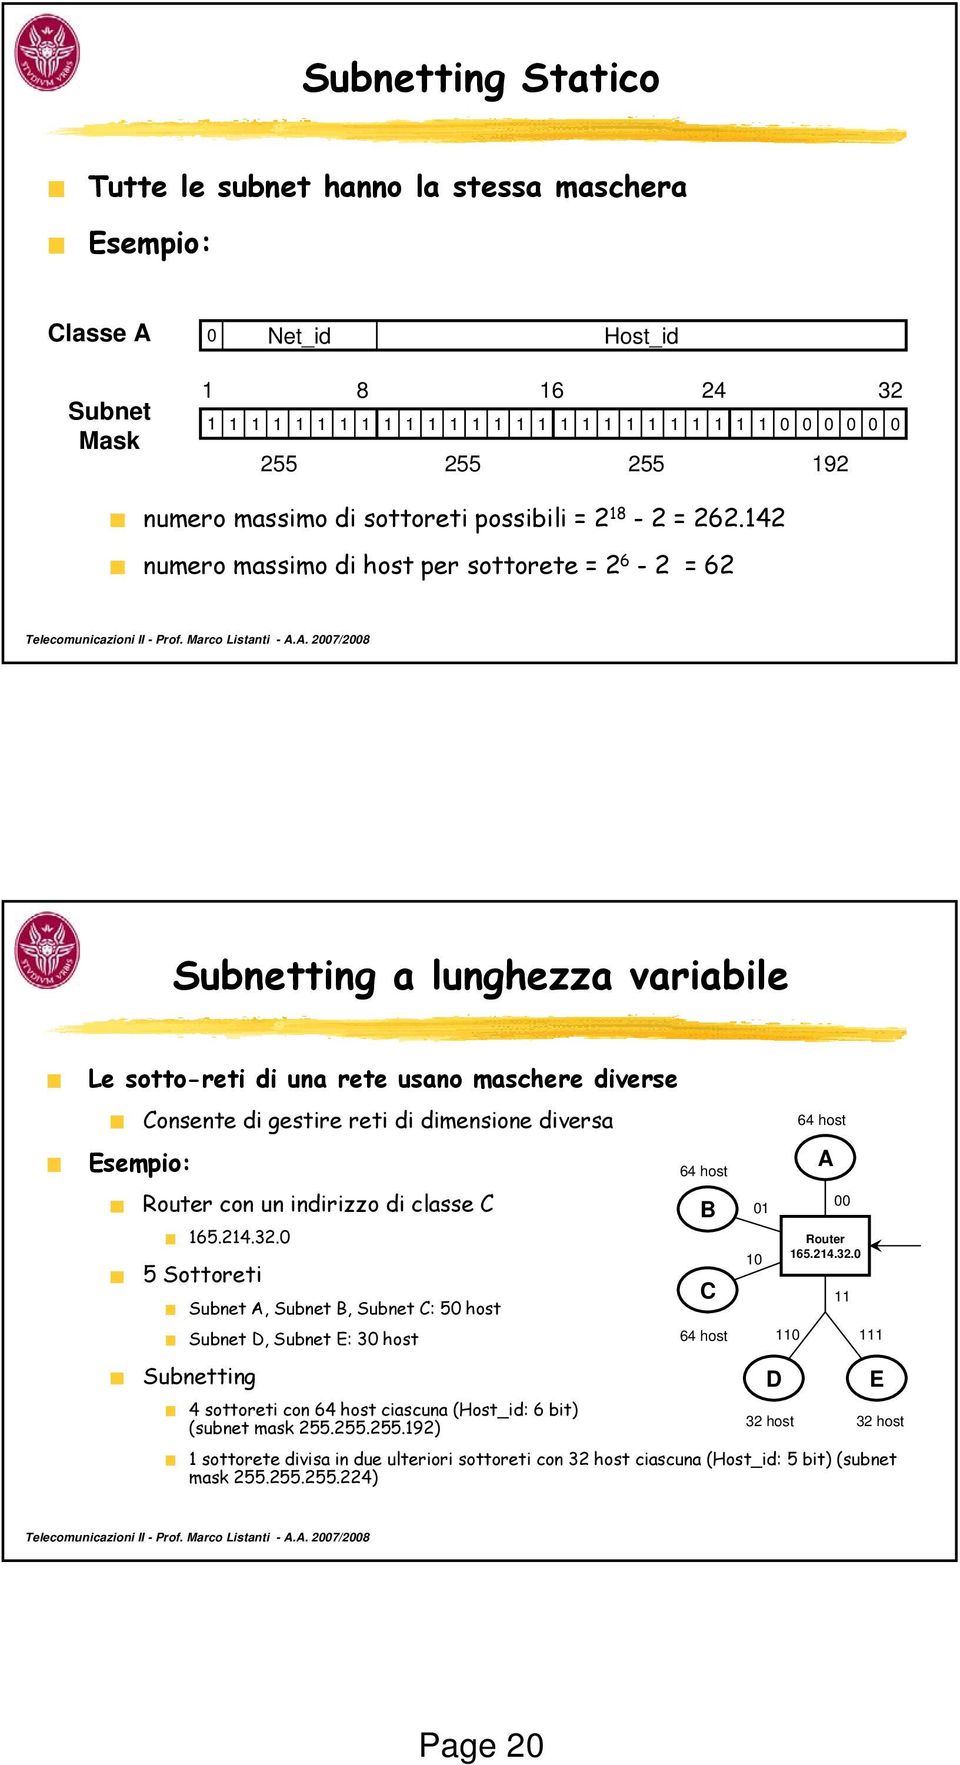 142 numero massimo di host per sottorete = 2 6-2 = 62 Subnetting a lunghezza variabile Le sotto-reti di una rete usano maschere diverse Esempio: Consente di gestire reti di dimensione diversa Router